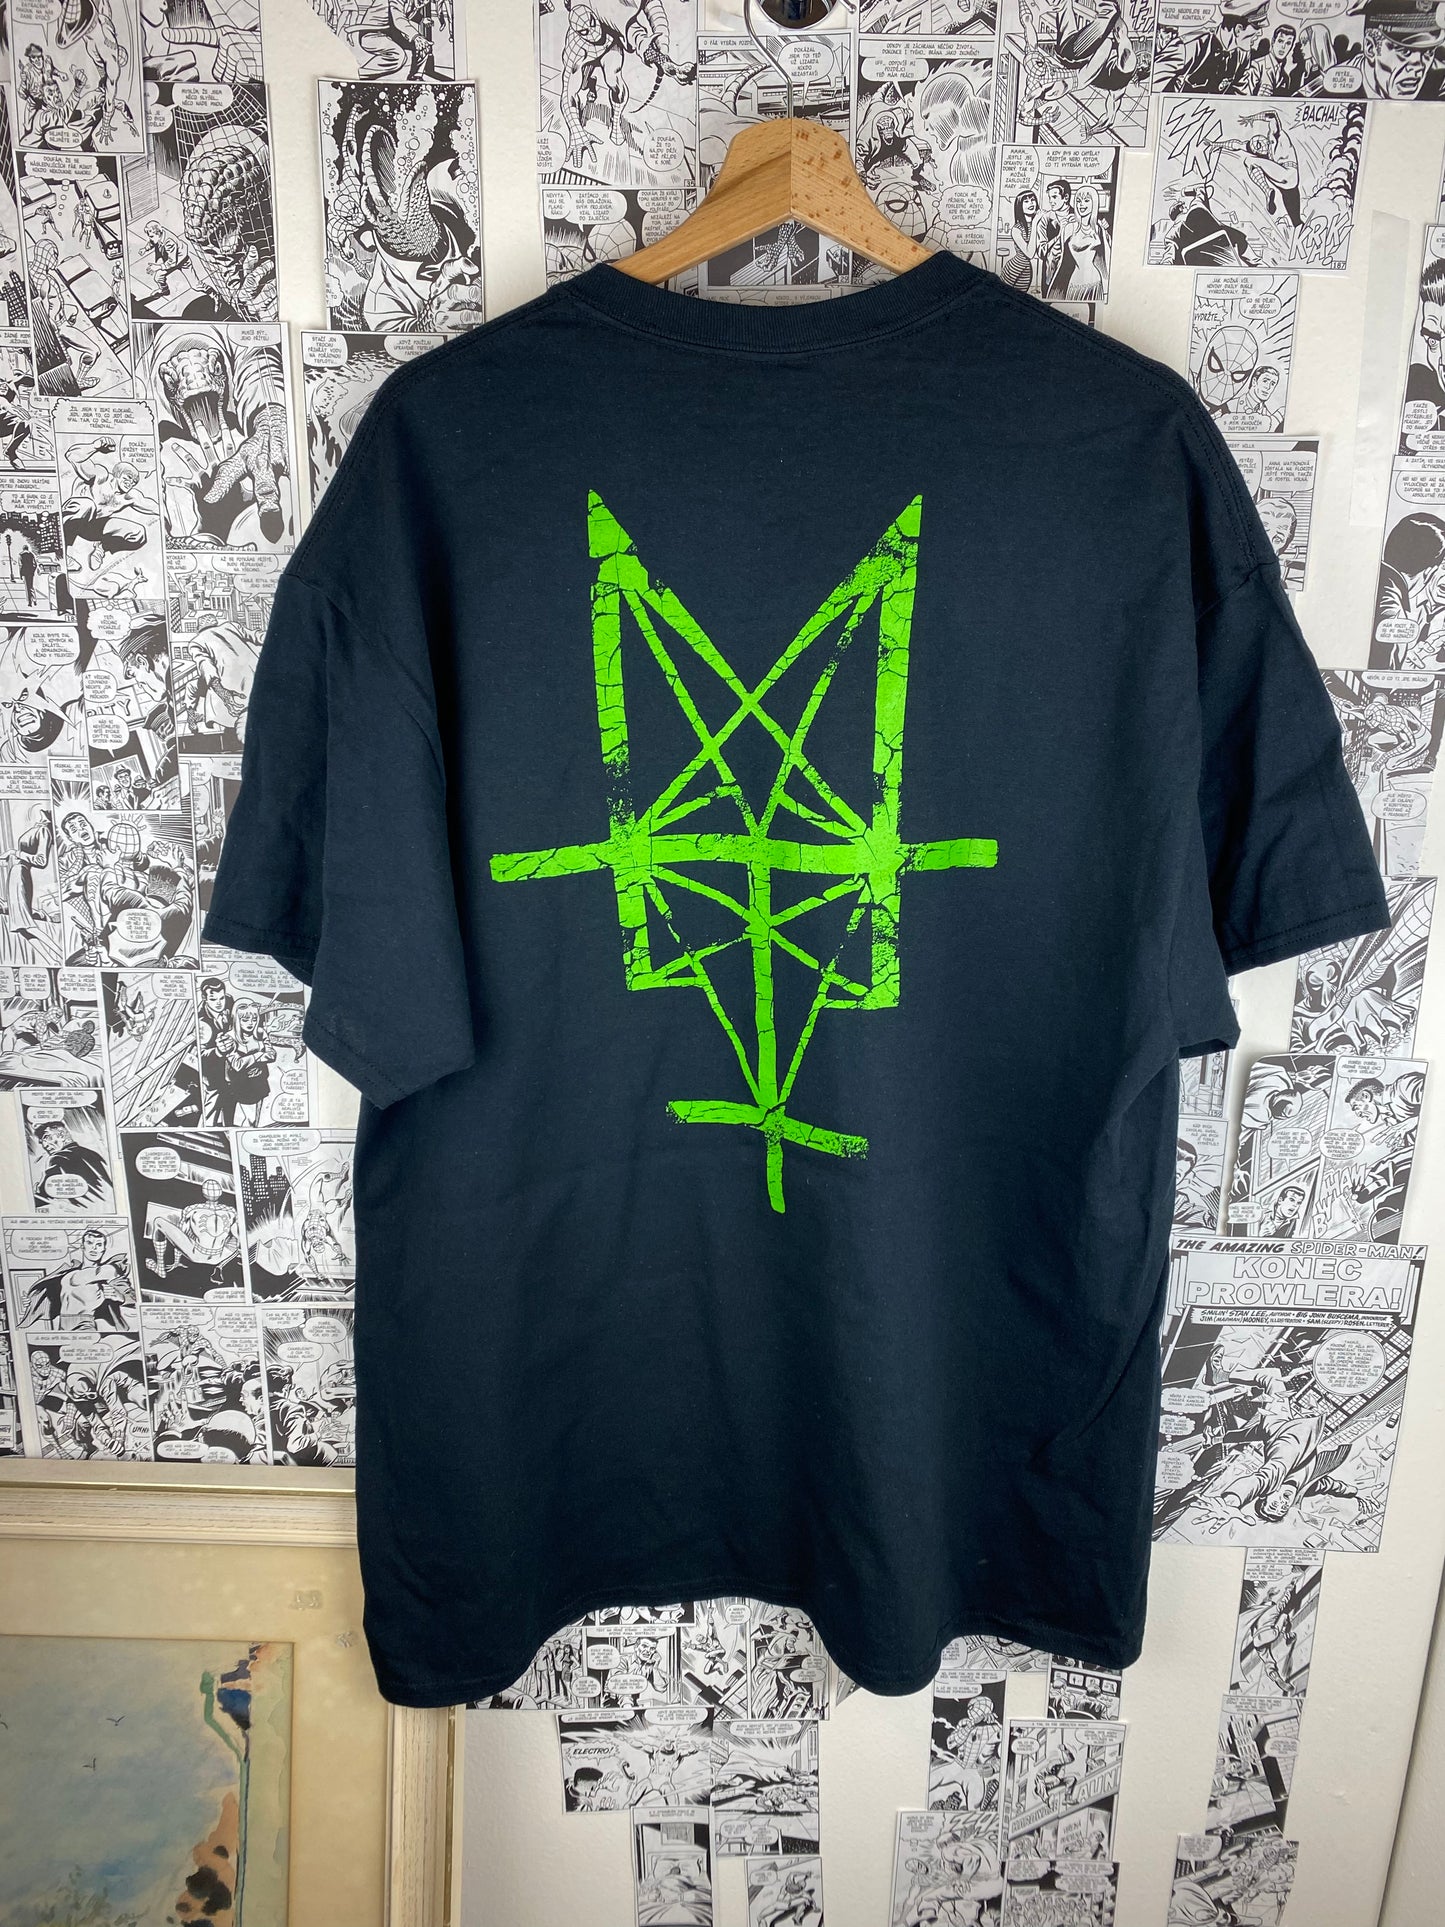 Vintage Deicide 00s t-shirt - size XL